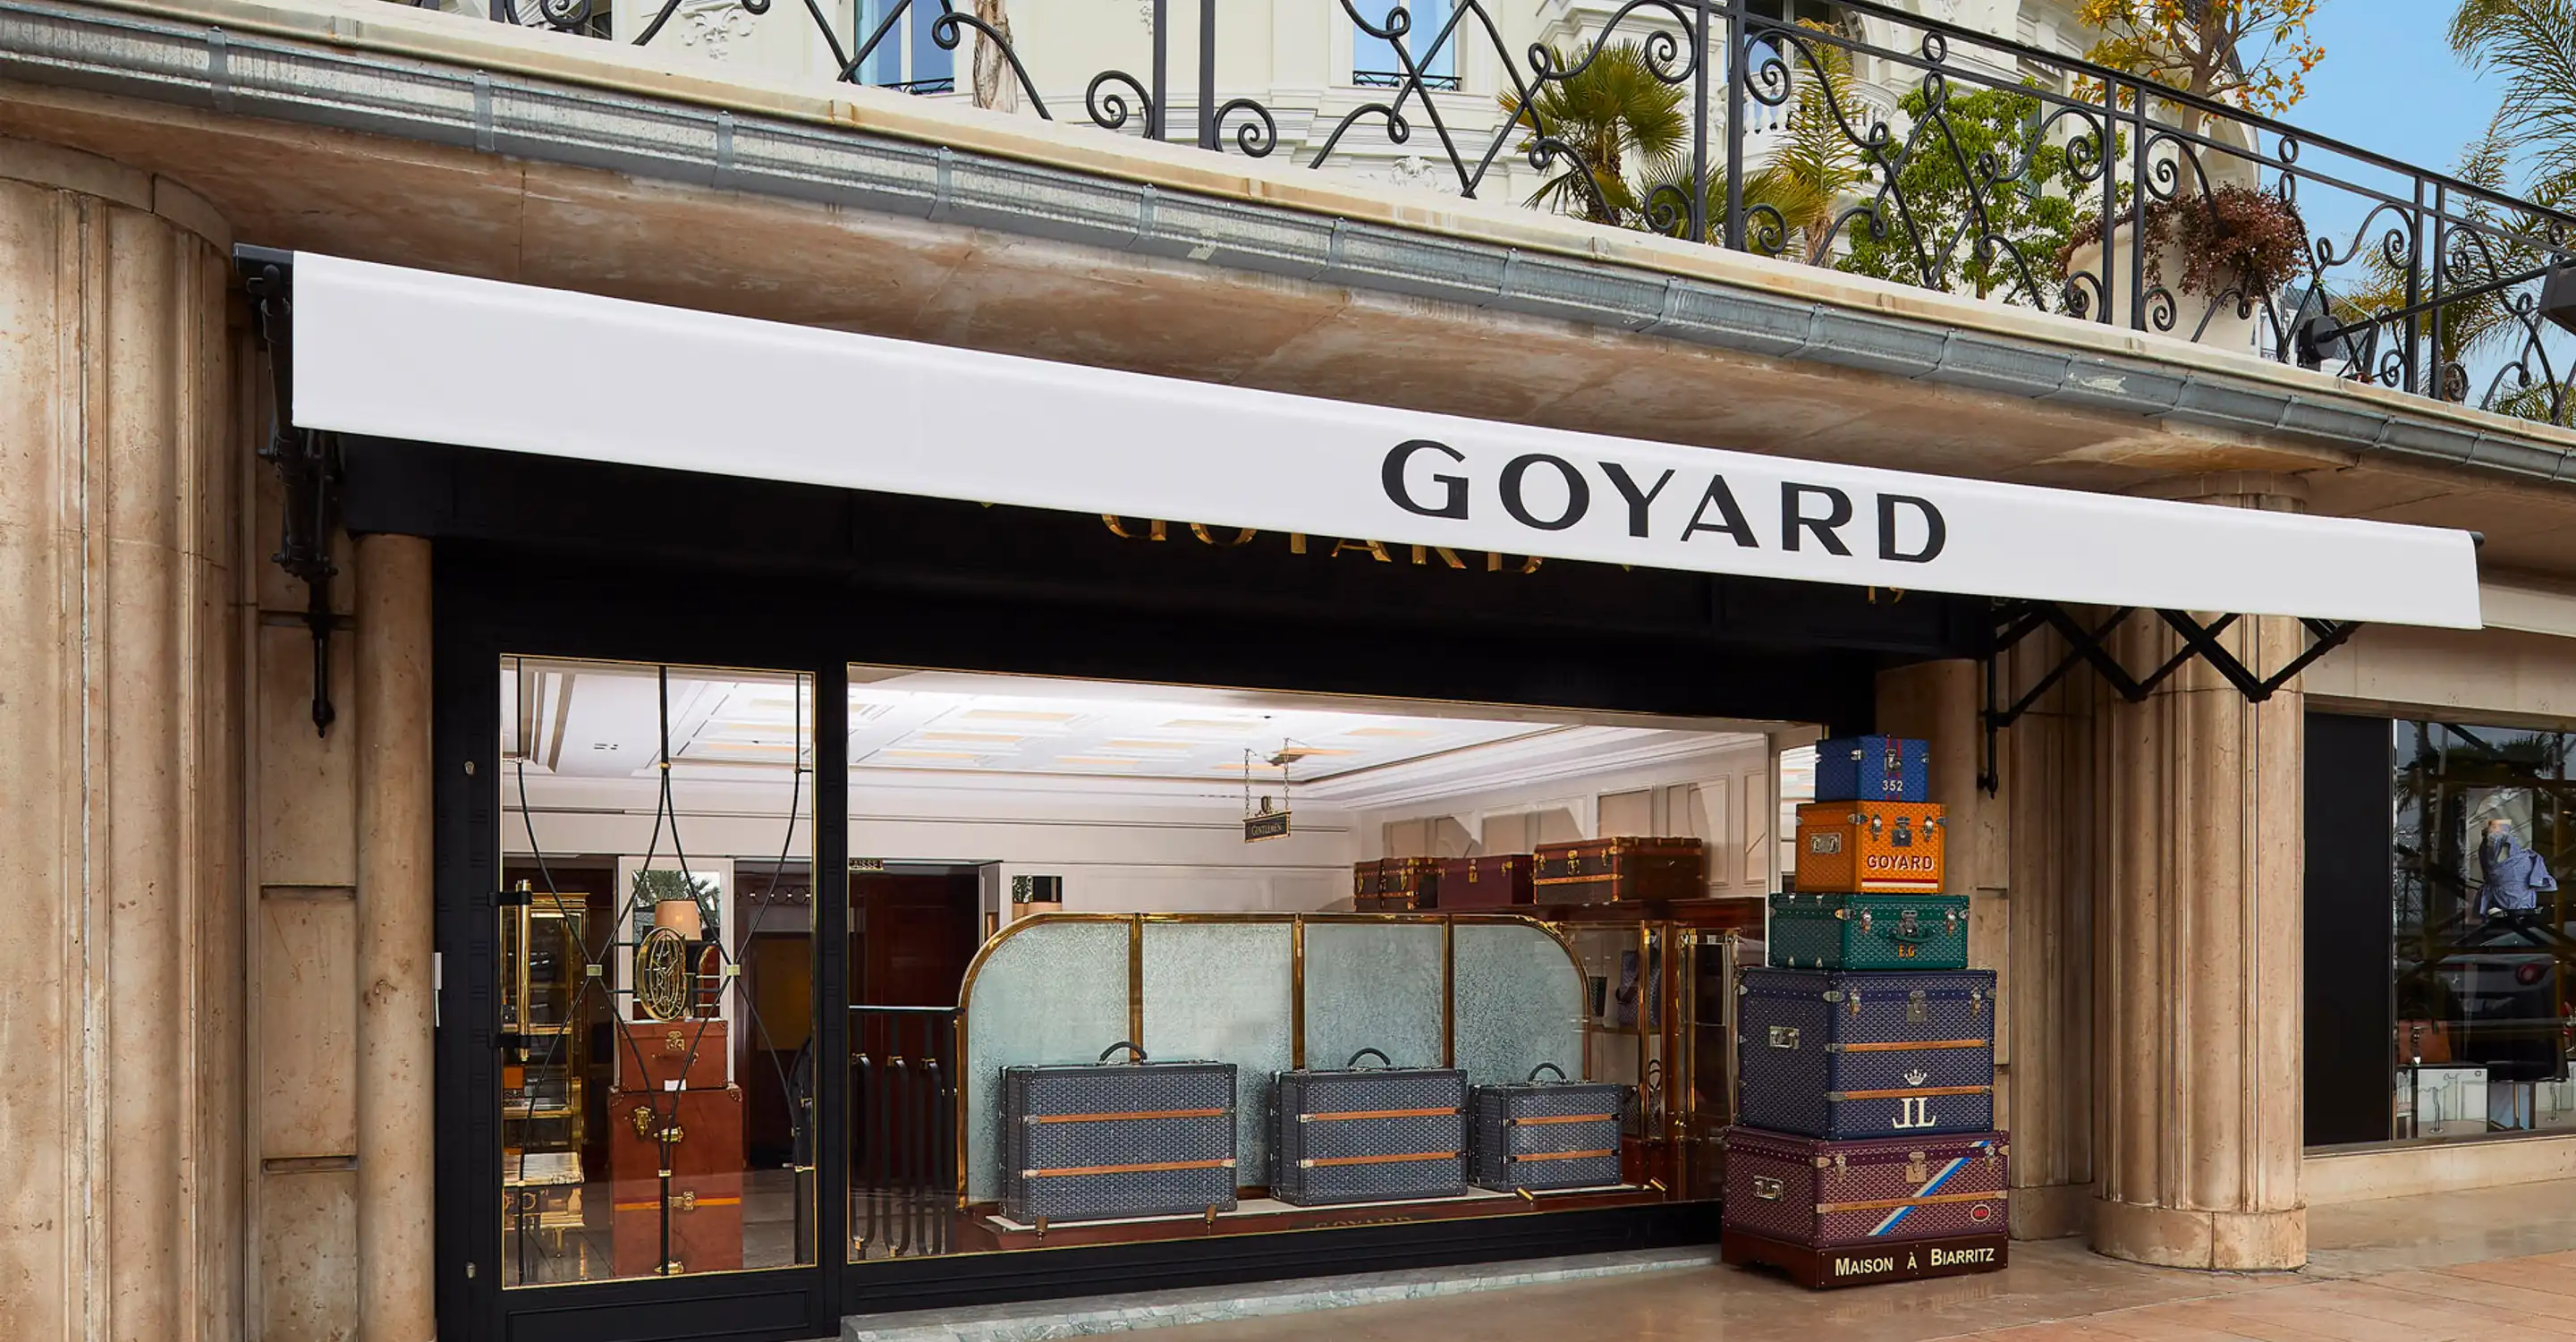 Maison Goyard - Celebrating the opening of the Goyard